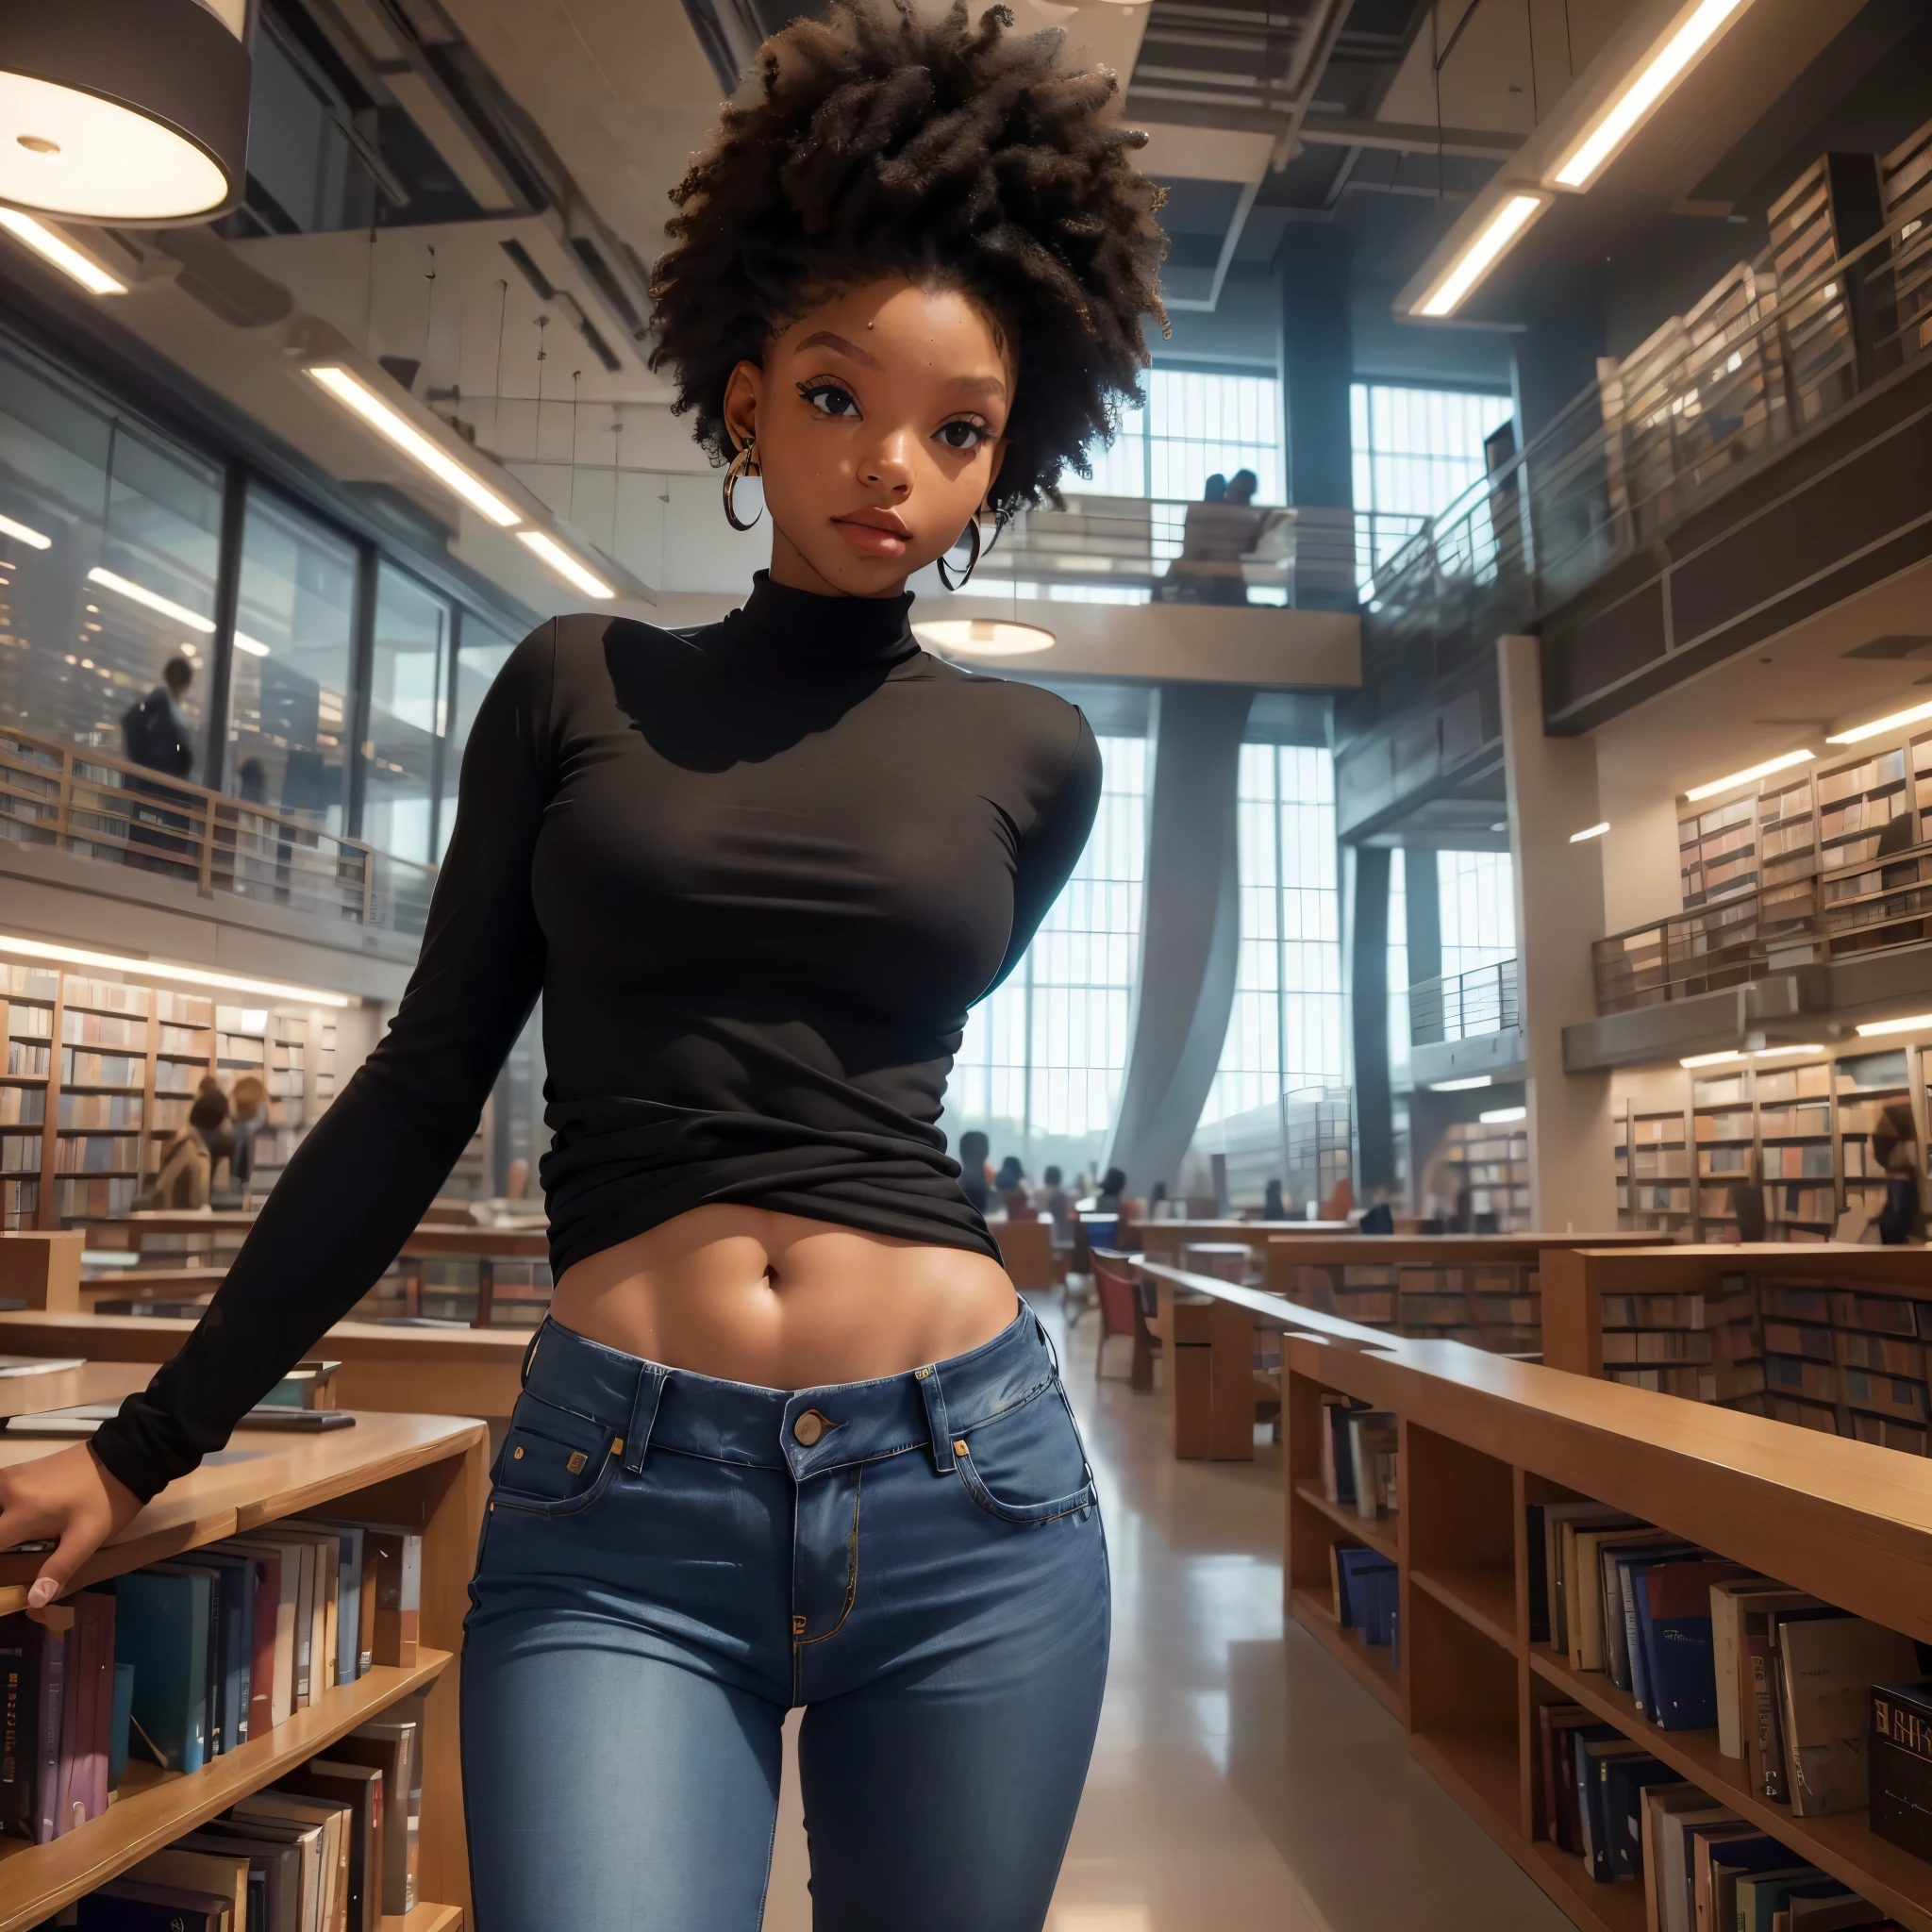 (最高品質,4k,8K,高解像度,傑作:1.2),非常に詳細な, 何千冊もの本を収蔵する巨大な未来的な図書館. 図書館の中央で肩越しに鑑賞者を見ているセクシーな黒人女子大学生, スタイリッシュなジーンズ, スタイリッシュなブラウス, ハレベイリー, 高解像度, 8K, 不条理な, シネスティル800, シャープなフォーカス